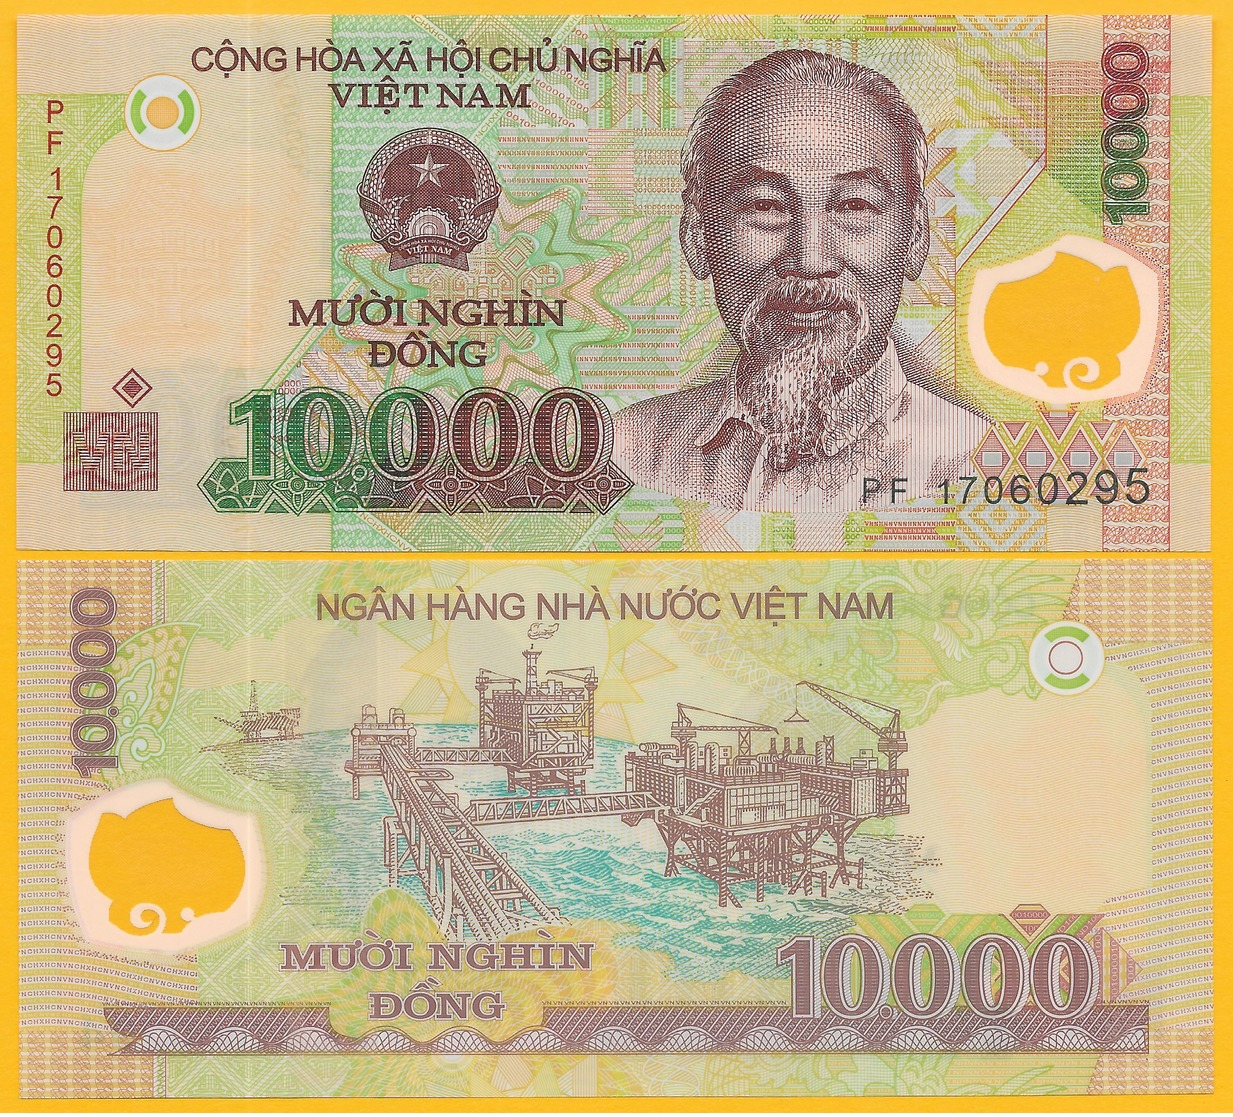 Vietnam Viet Nam 10000 (10,000) Dong P-119j 2017 UNC Polymer Banknote - Vietnam